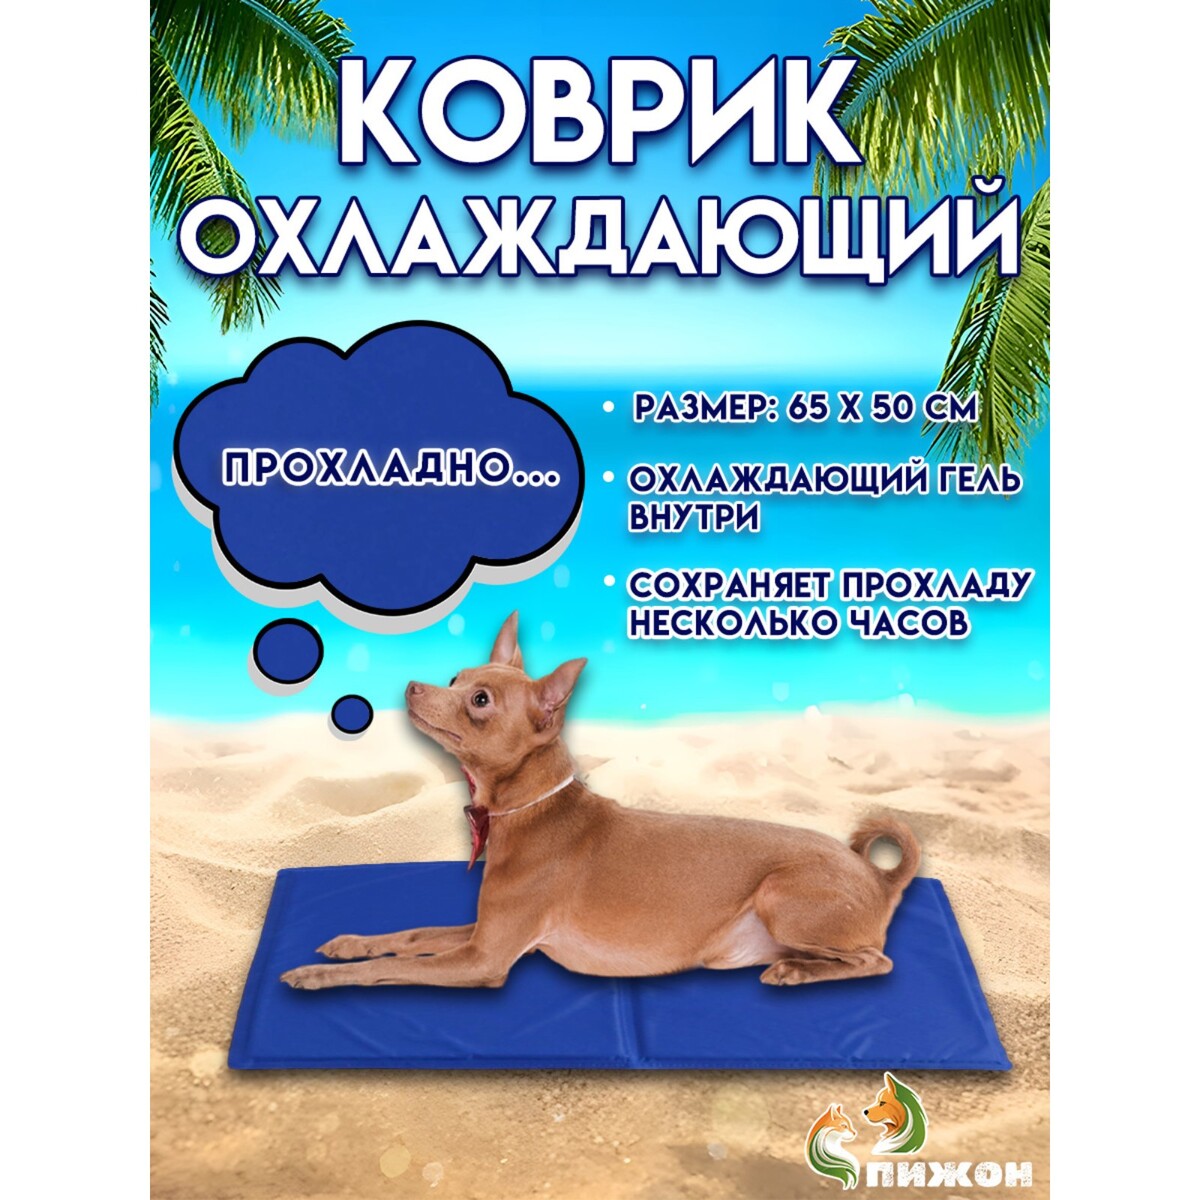 Коврик охлаждающий (гель+губка), 65 х 50 см, синий коврик для йоги inex yoga mat in rp ym35 bl 35 rp 170x60x0 35 синий